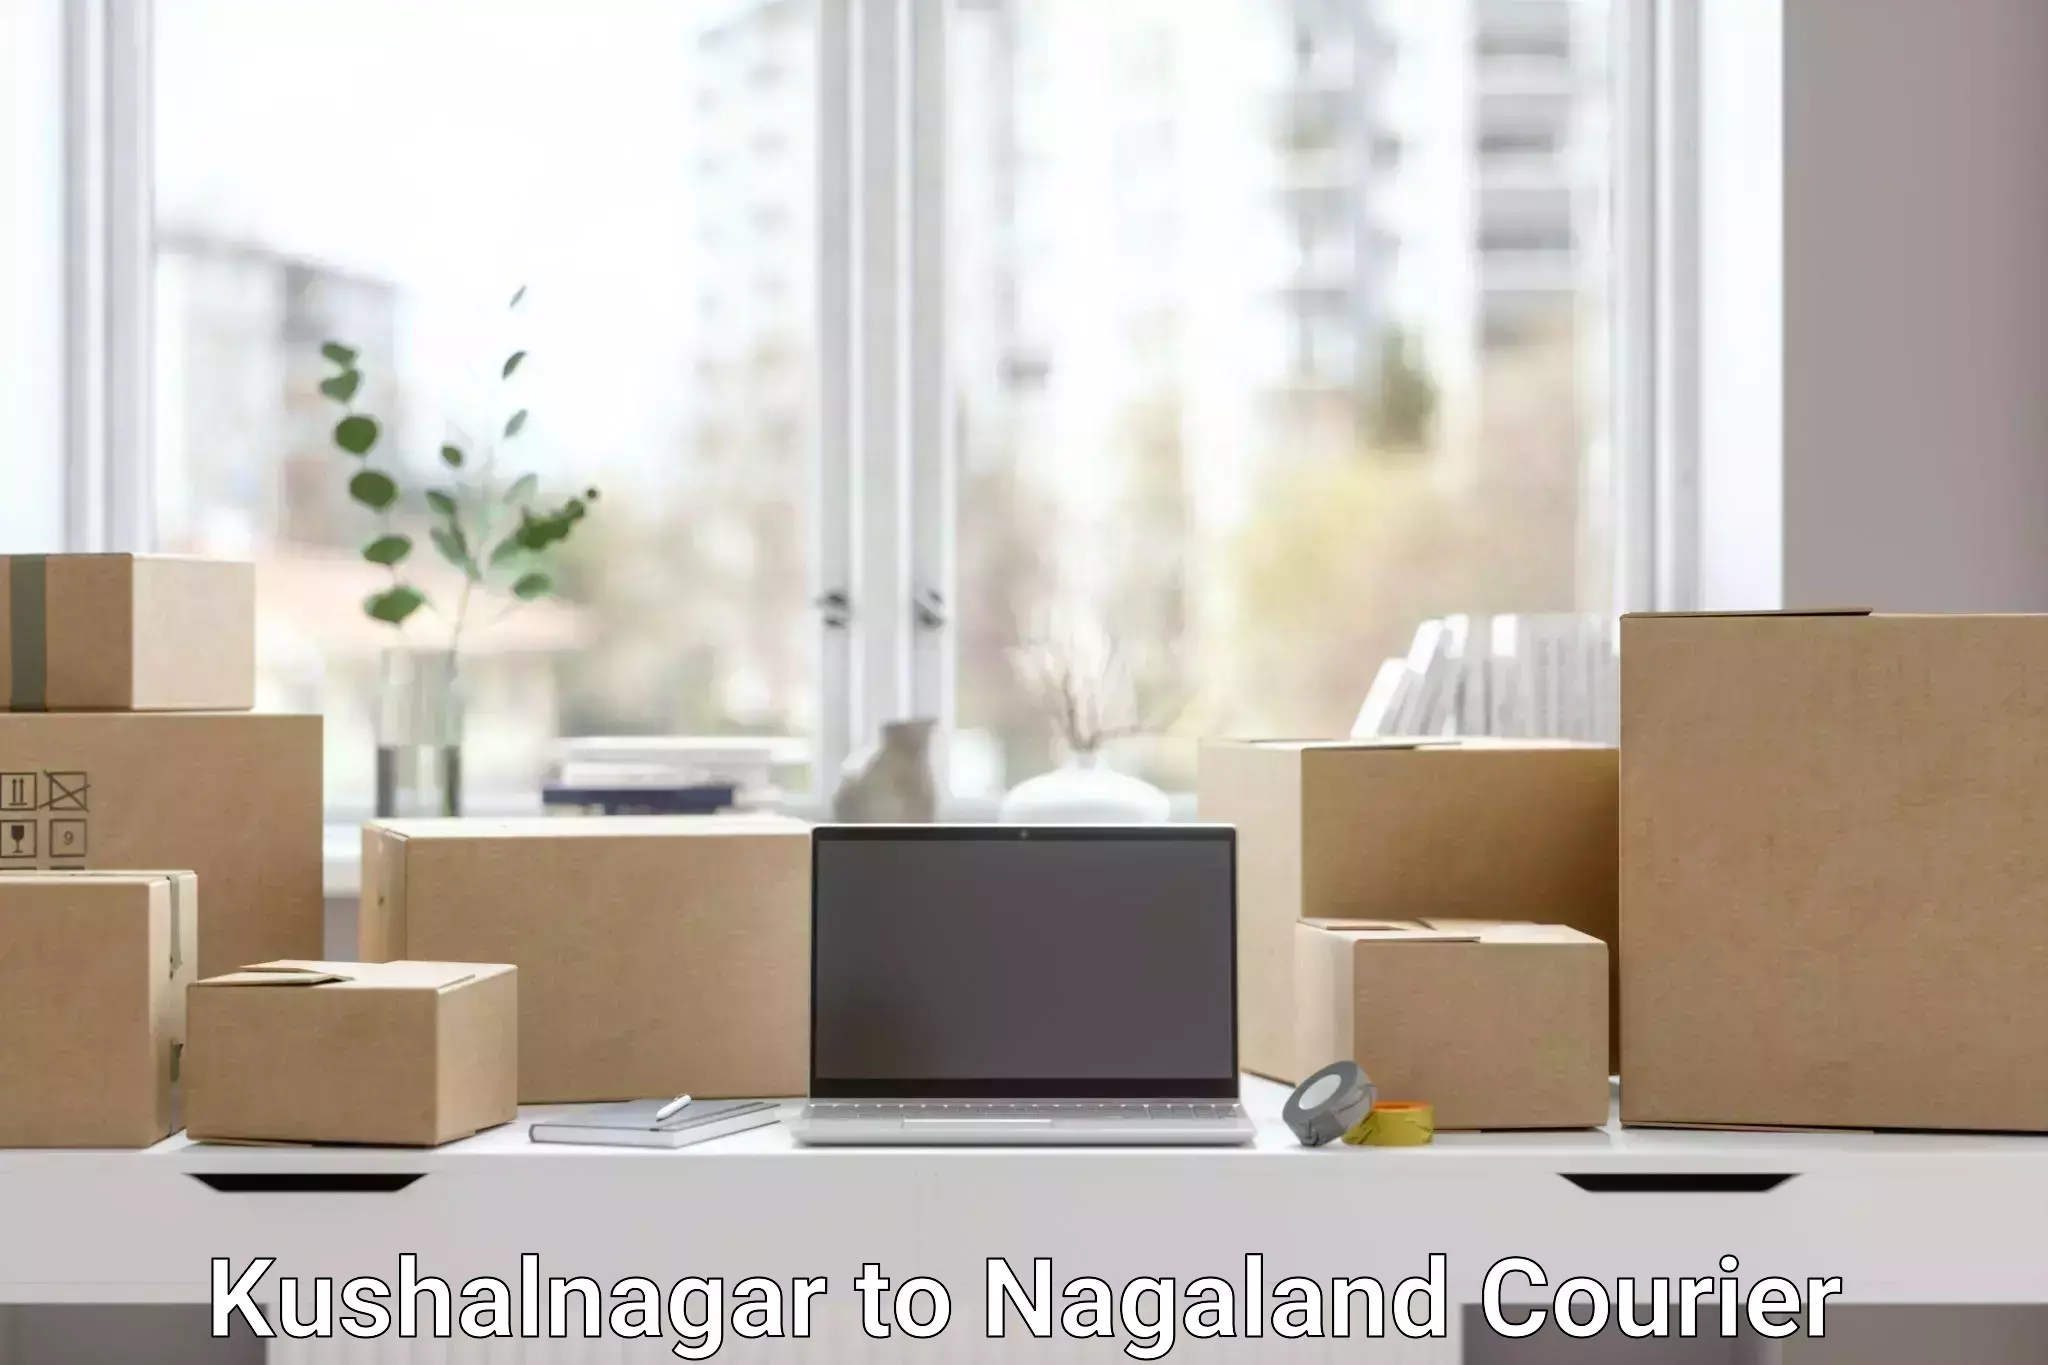 Quick booking process Kushalnagar to Nagaland